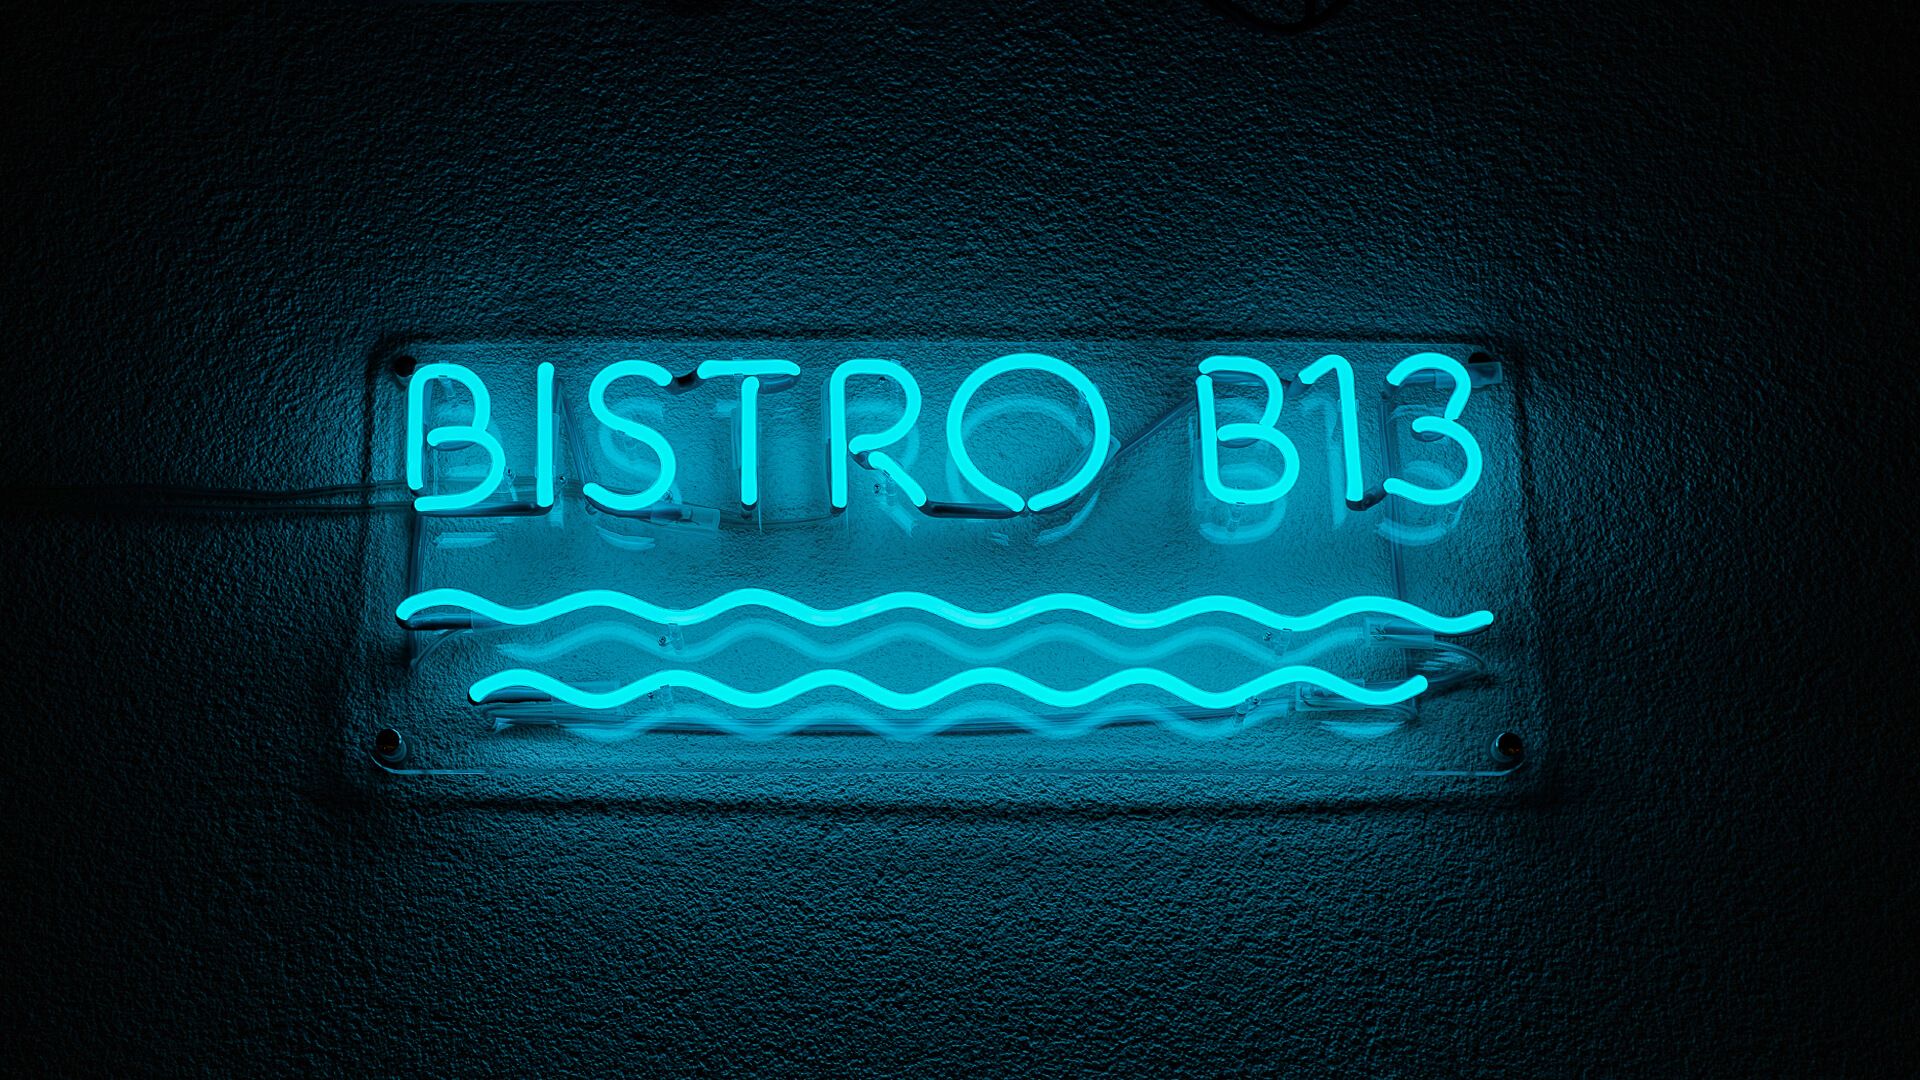 Bistro B13 - Insegna al neon blu bistrot, con onde sotto la scritta.